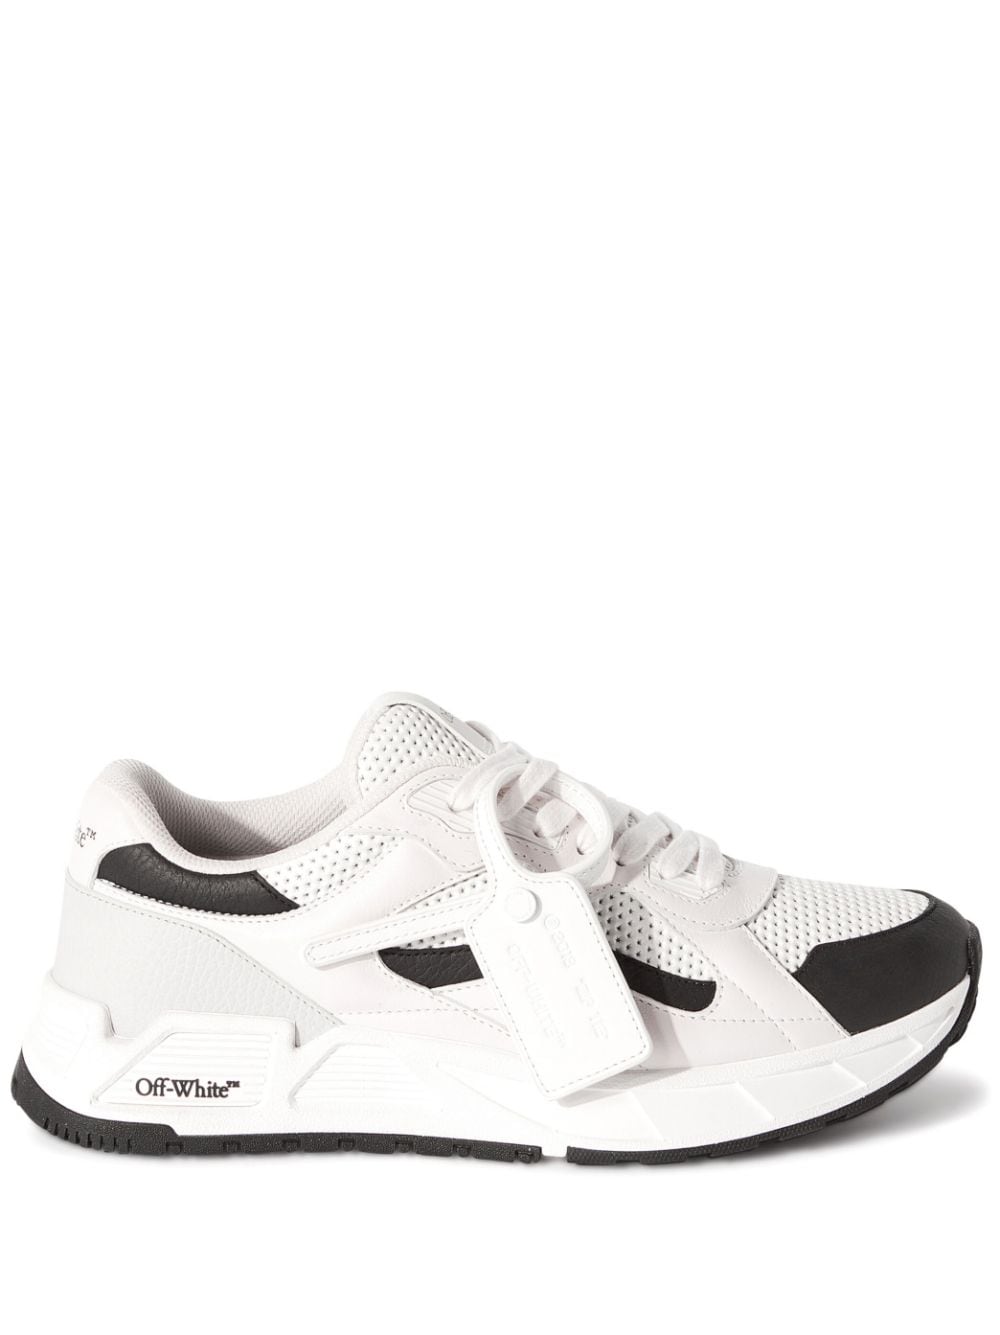 Puma Off White Shoes - Buy Puma Off White Shoes online in India